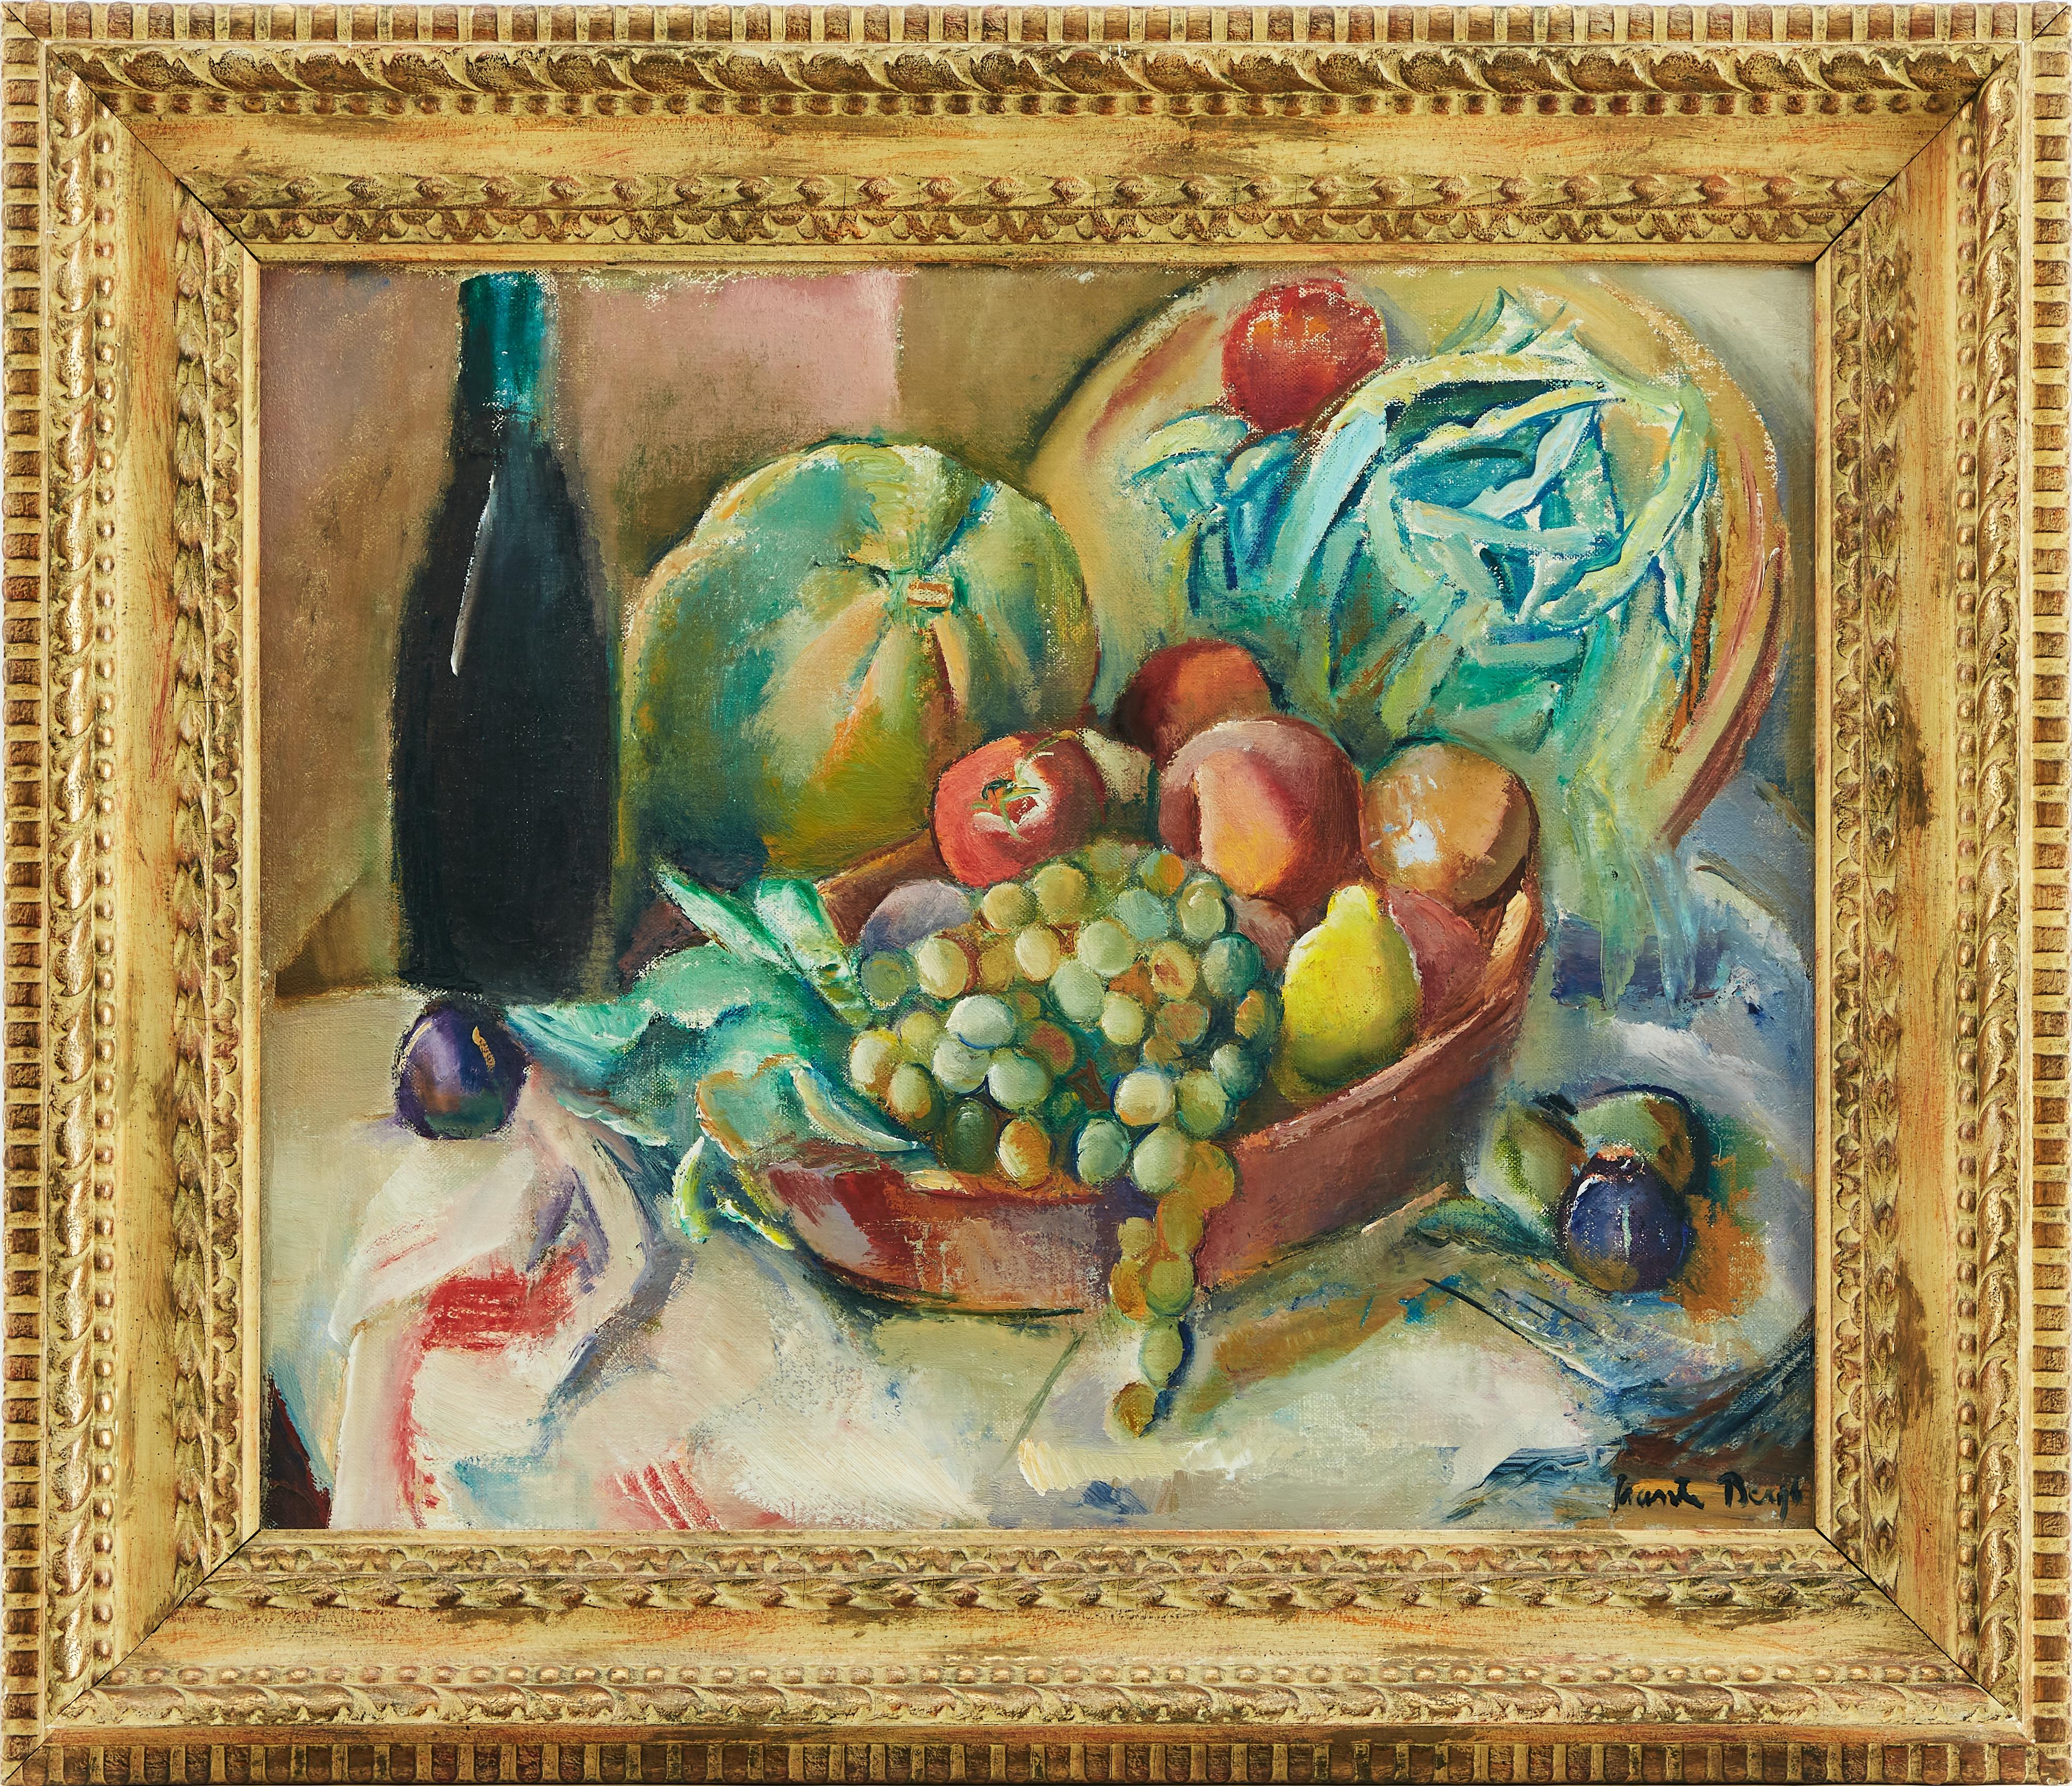 Une belle nature morte de fruits dans une corbeille posée sur une table par Ewald Svante Bergh, (1885-1946). Huile sur toile. Bergh était un peintre suédois et un membre du groupe d'artistes "De tolv".
À l'âge de 14 ans, en 1899, il commence à